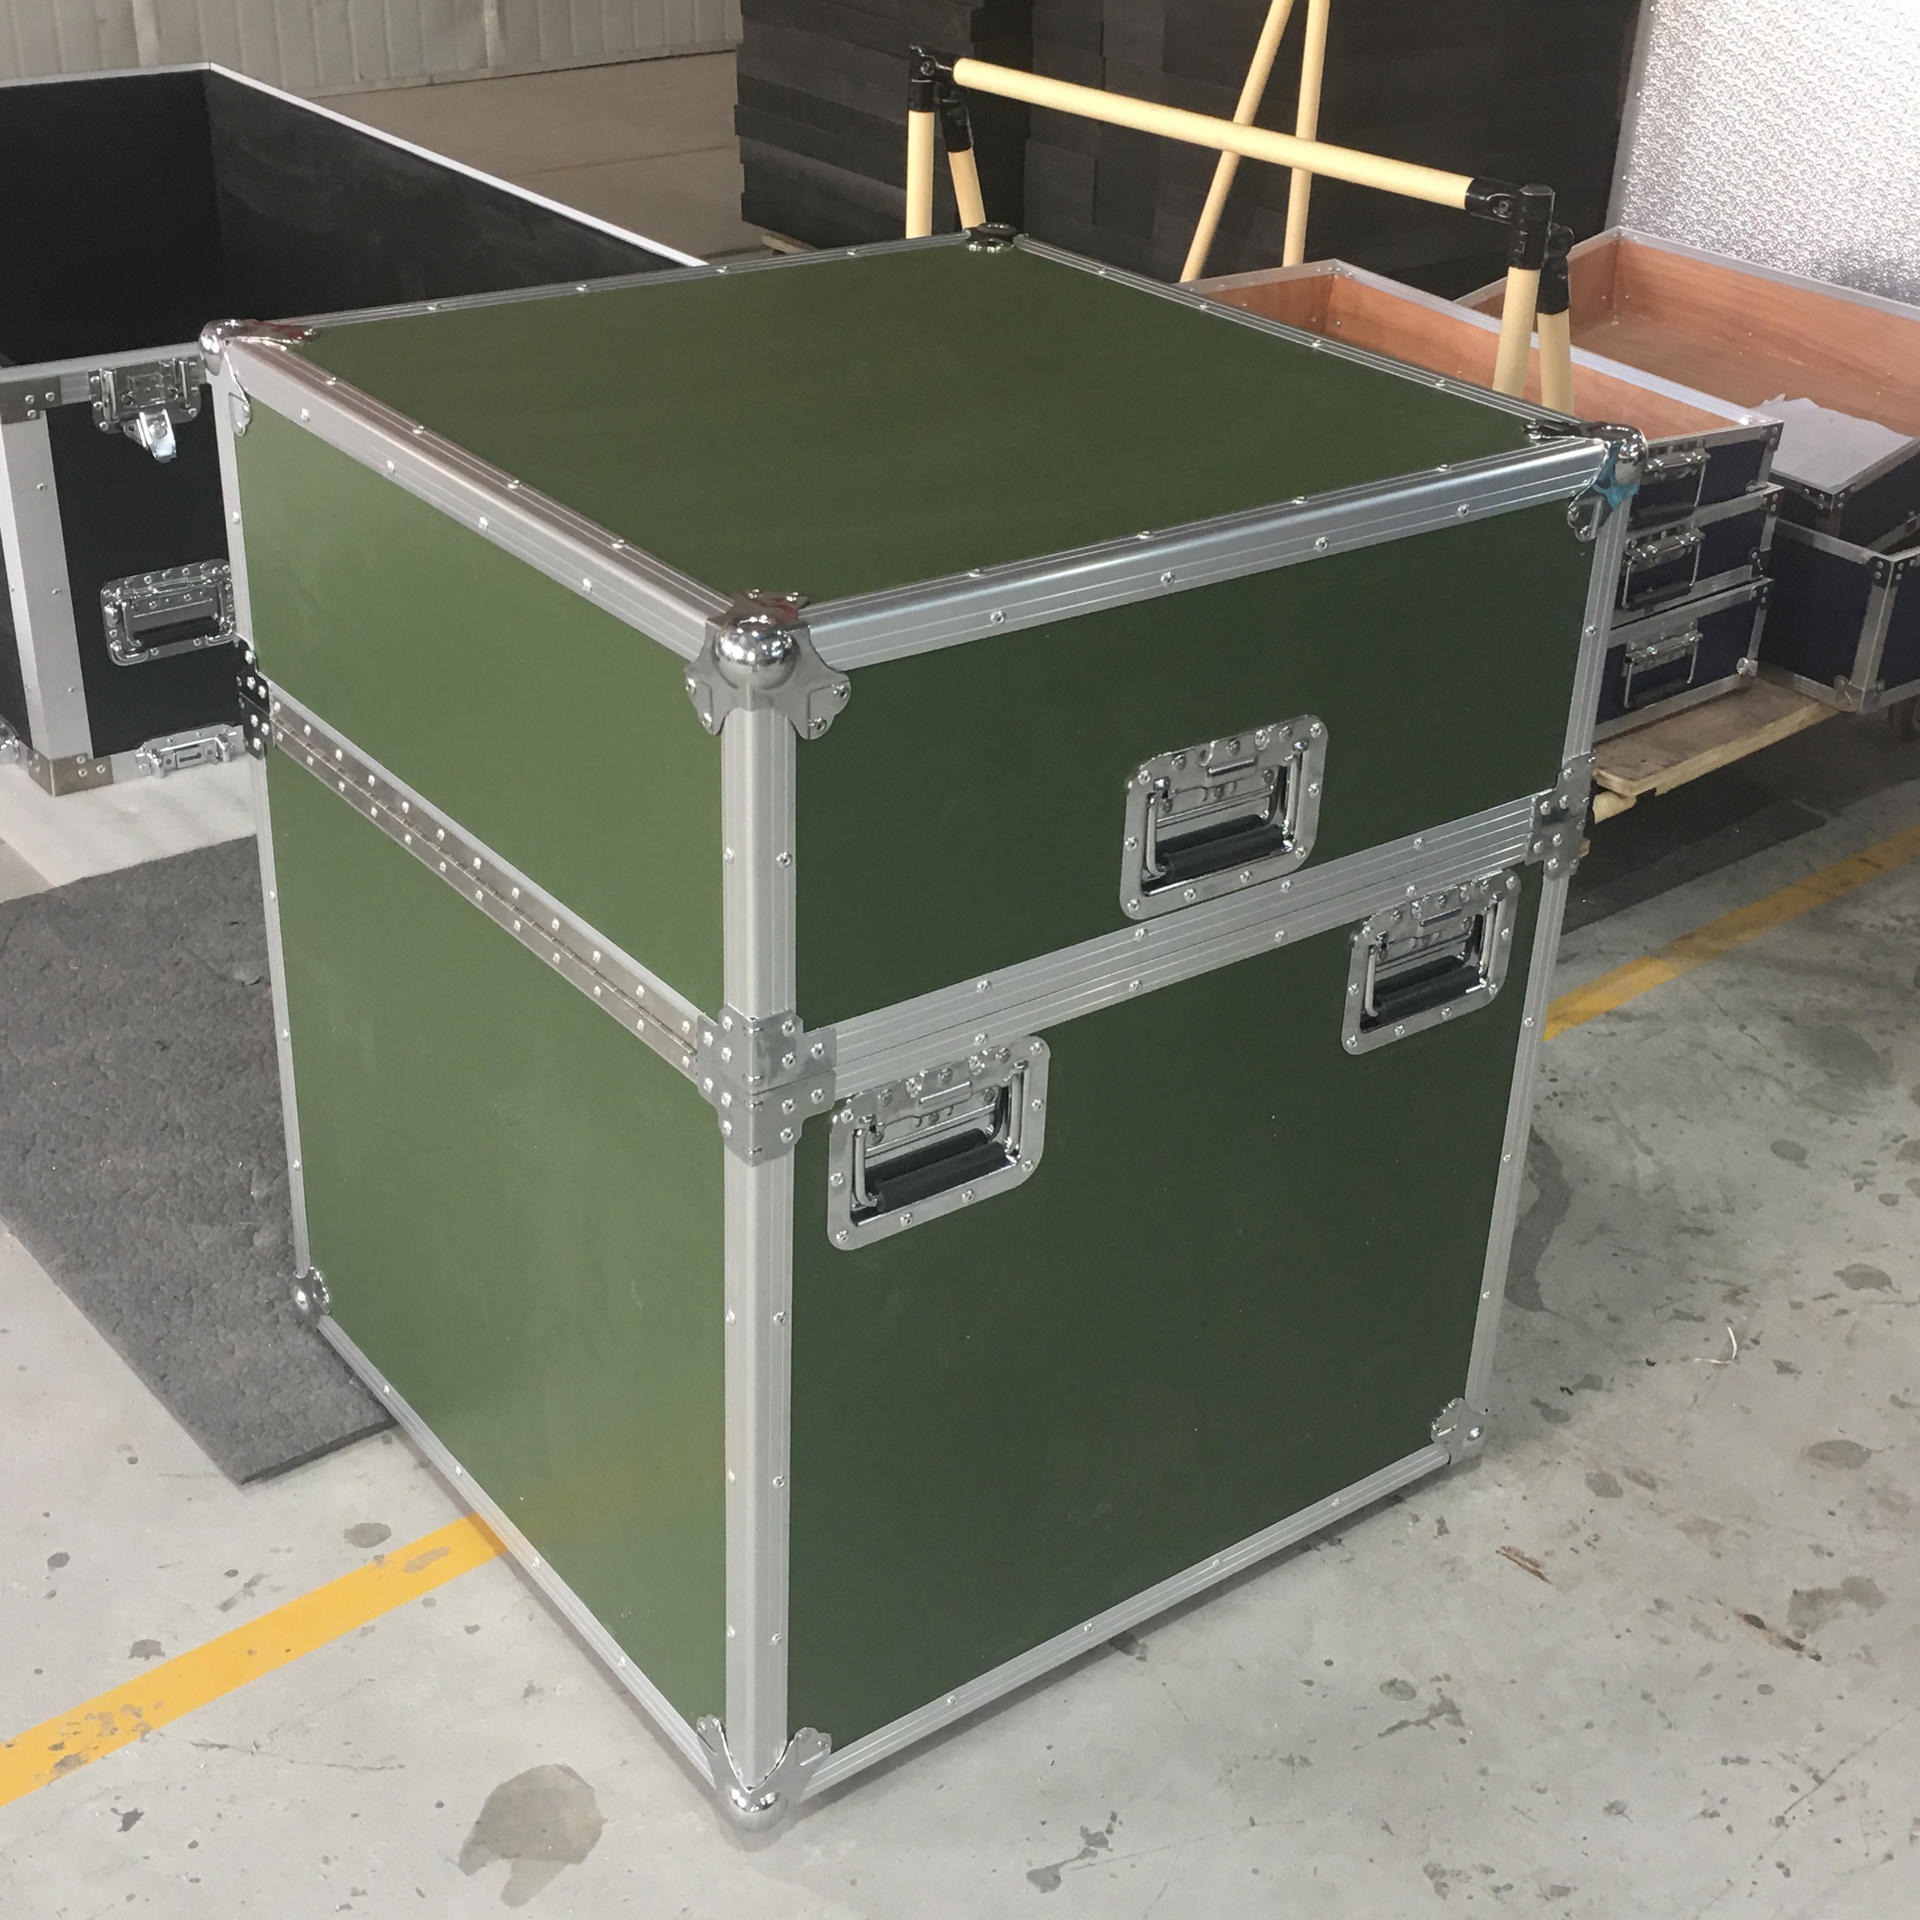 铝箱定制 航空设备包装箱 大型铝箱订制厂家  品牌铝合金箱